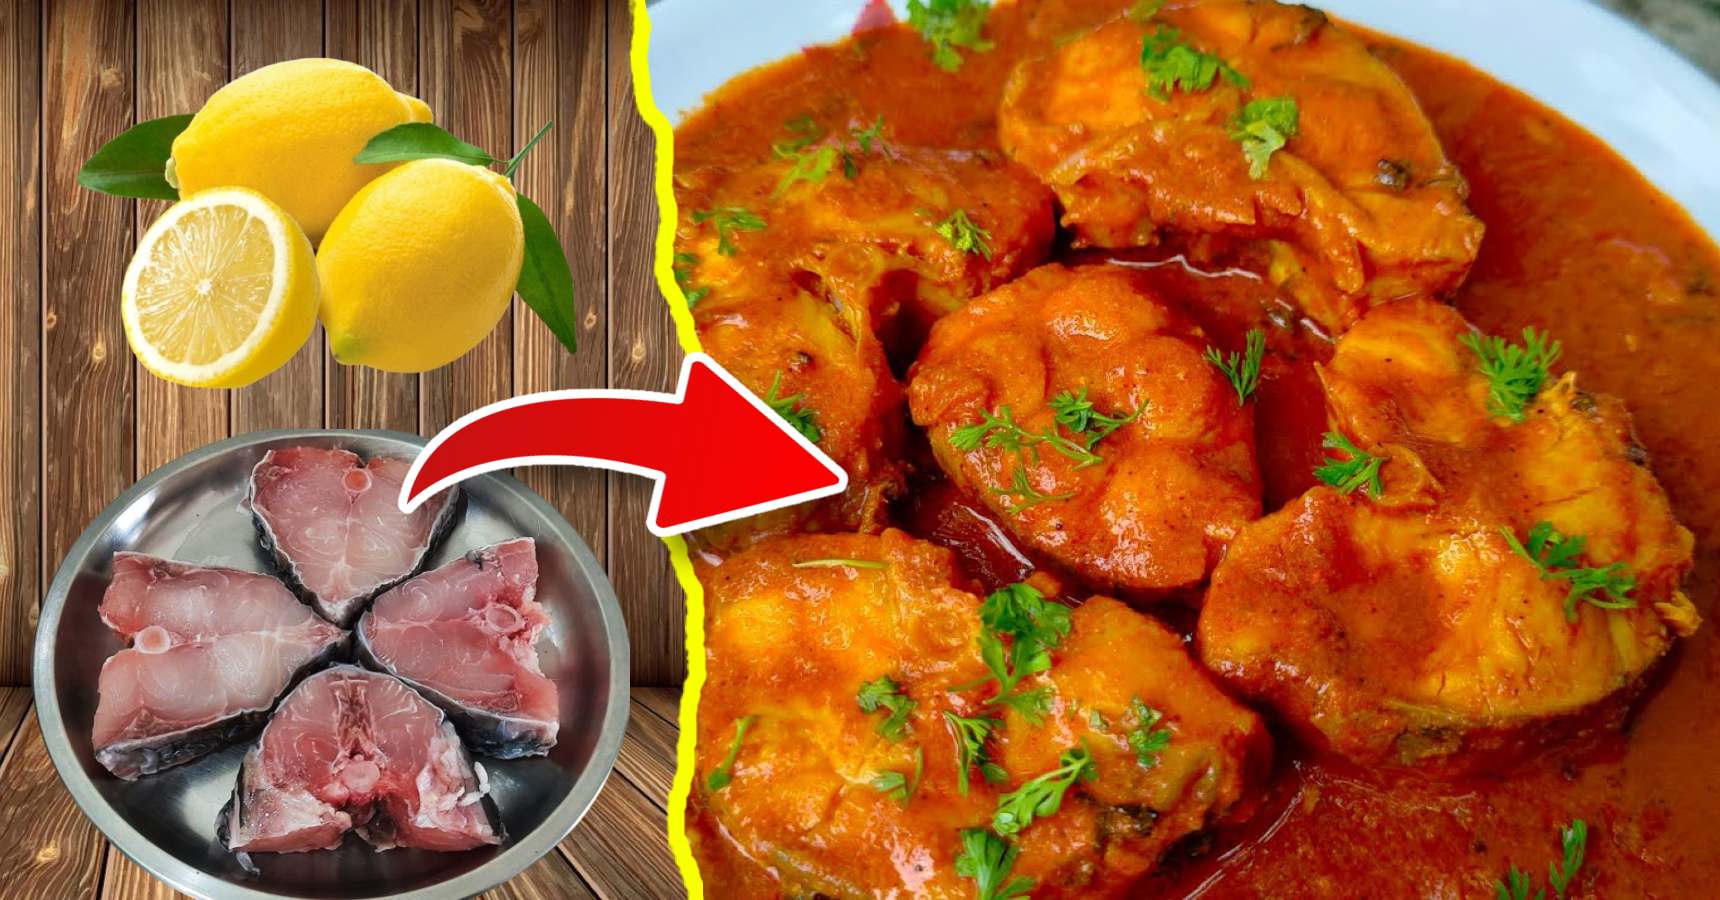 Bengali Style Lemon Garlic Fish Cooking Recipe